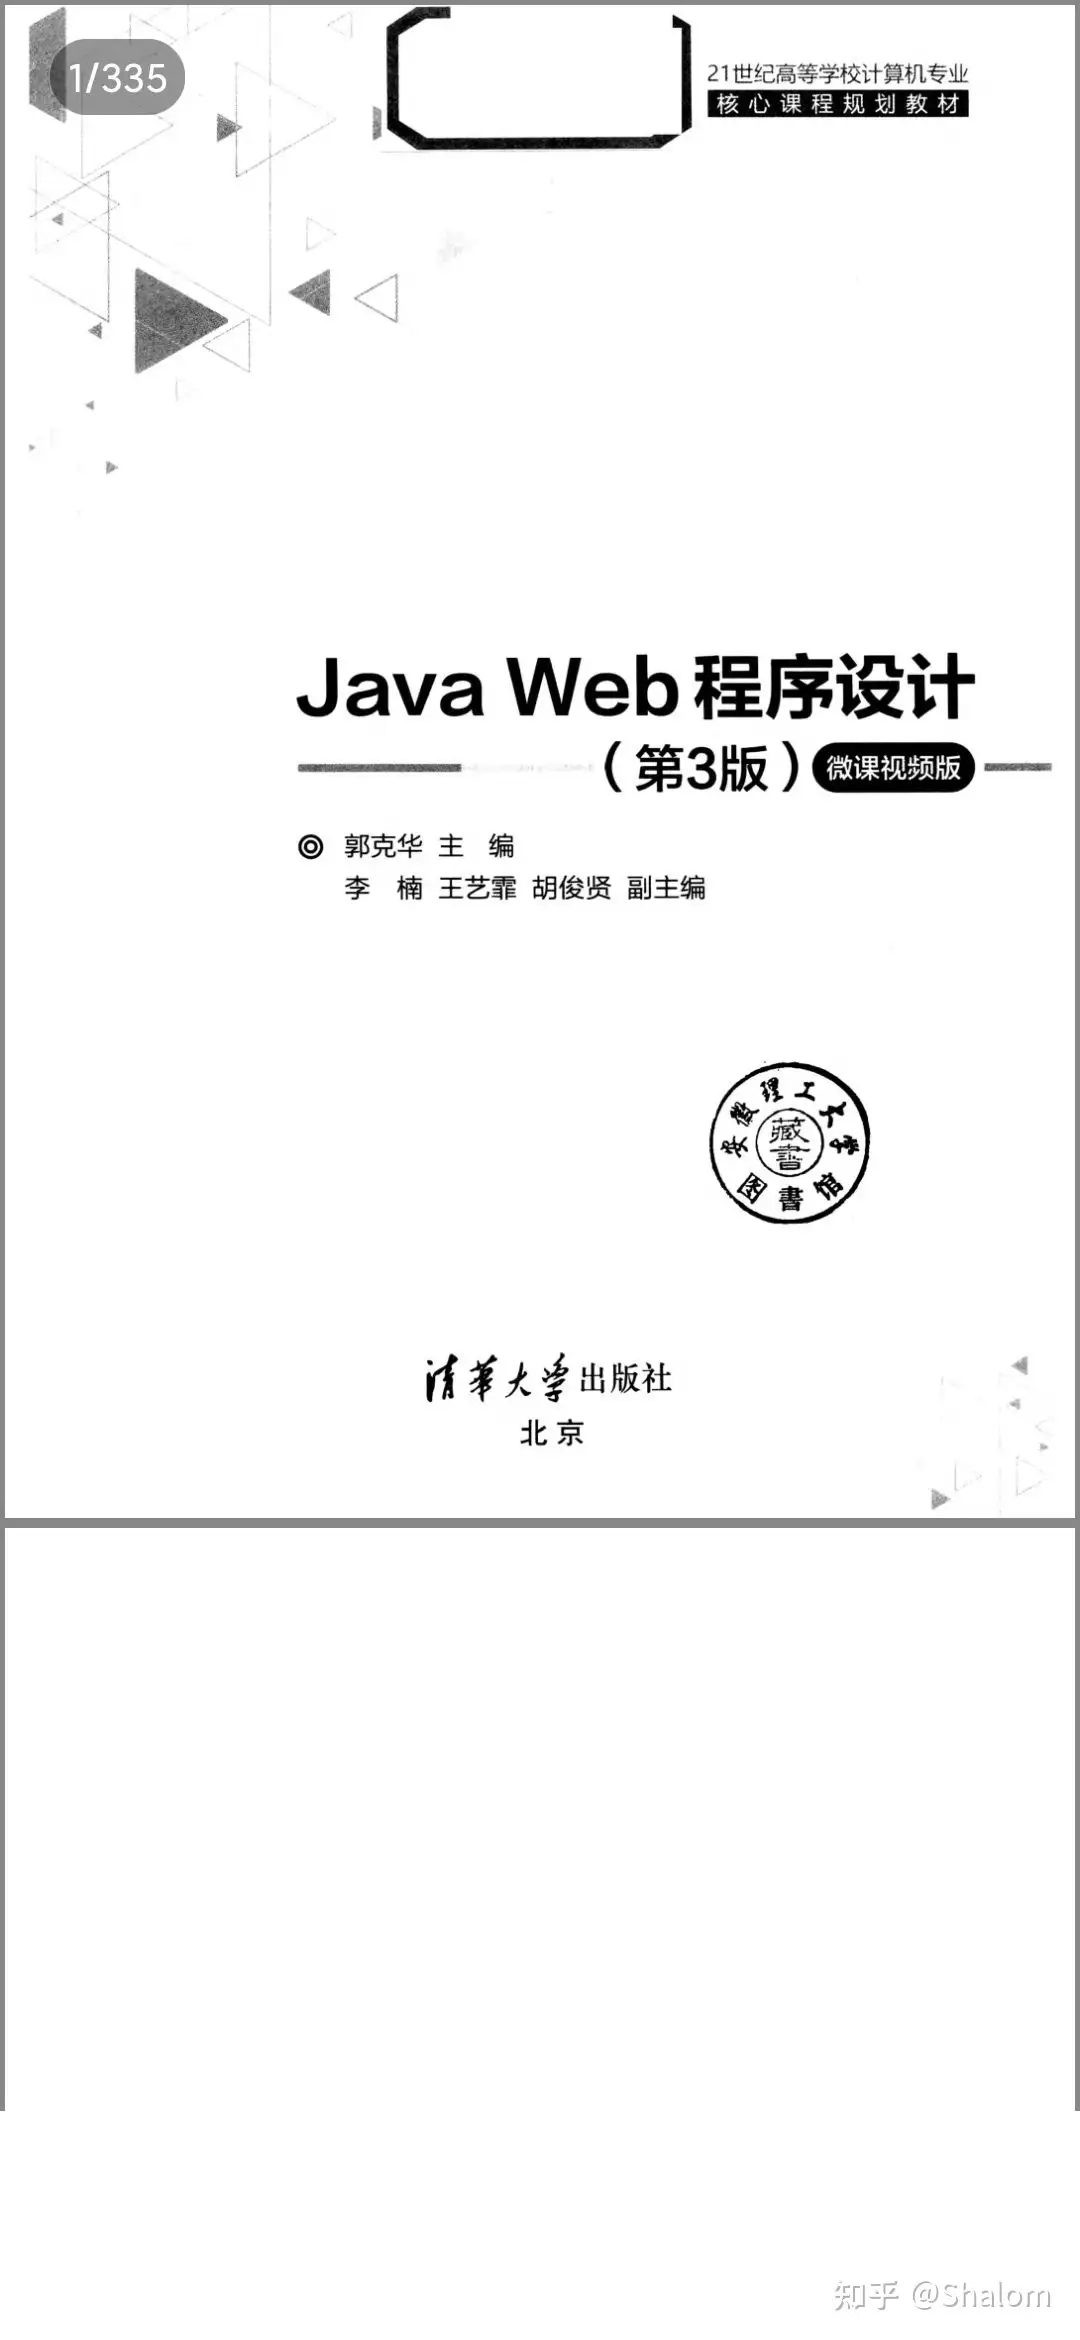 Java Web程序设计（第三版） 微课视频版郭克华主编pdf - 知乎